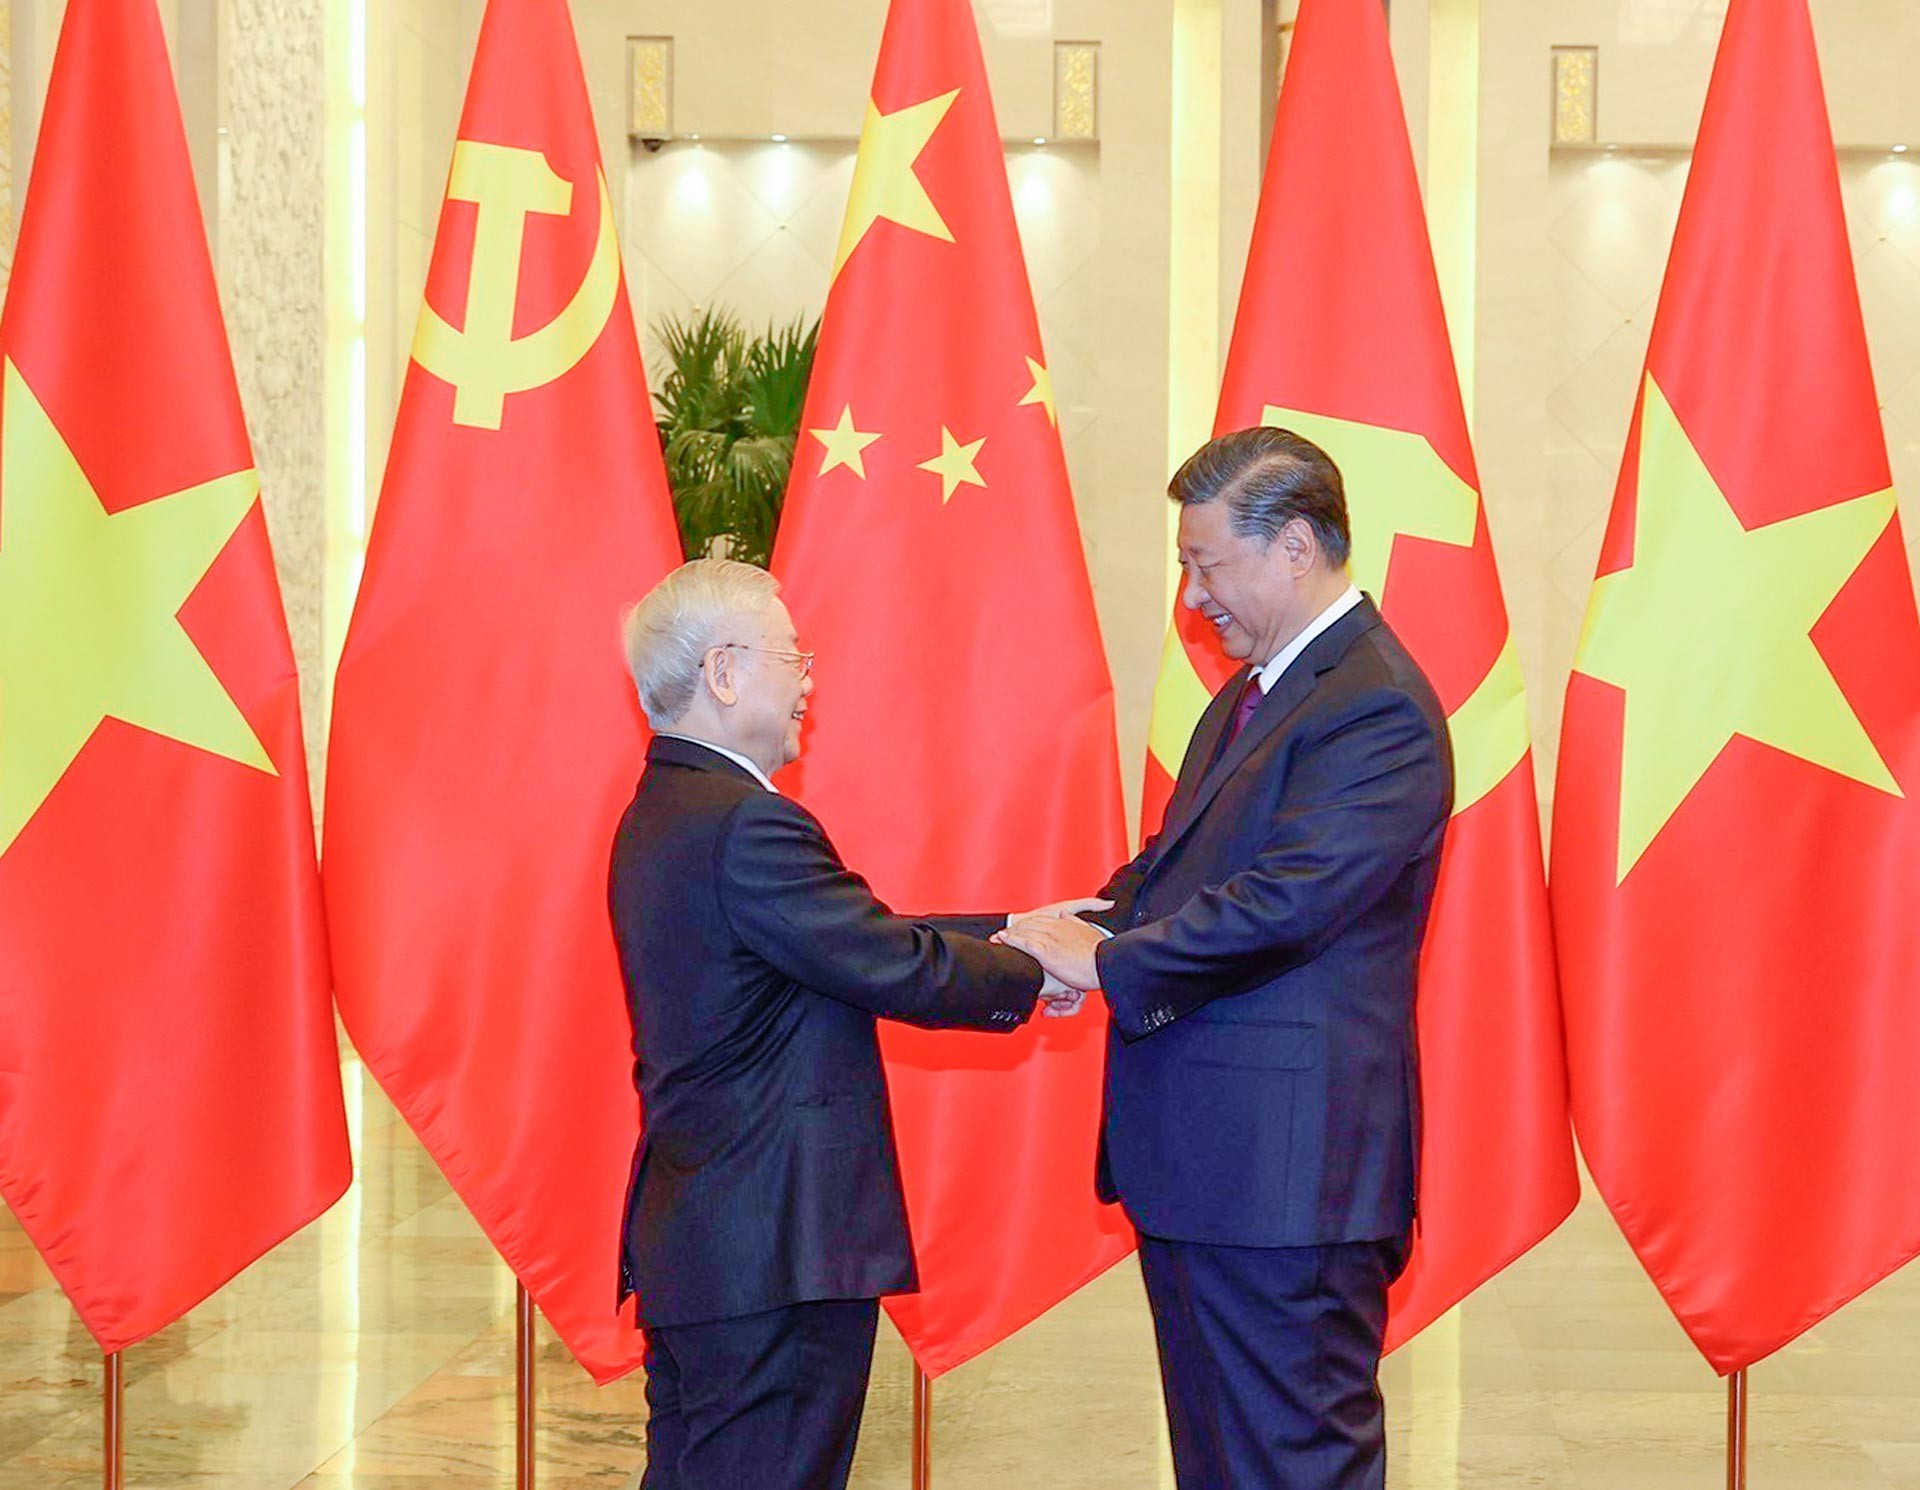 Chuyến thăm chính thức của Tổng Bí thư Nguyễn Phú Trọng tới Trung Quốc từ ngày 30/10-1/11/2022 là một hoạt động đối ngoại nổi bật trong nửa đầu nhiệm kỳ Đại hội lần thứ XIII của Đảng.